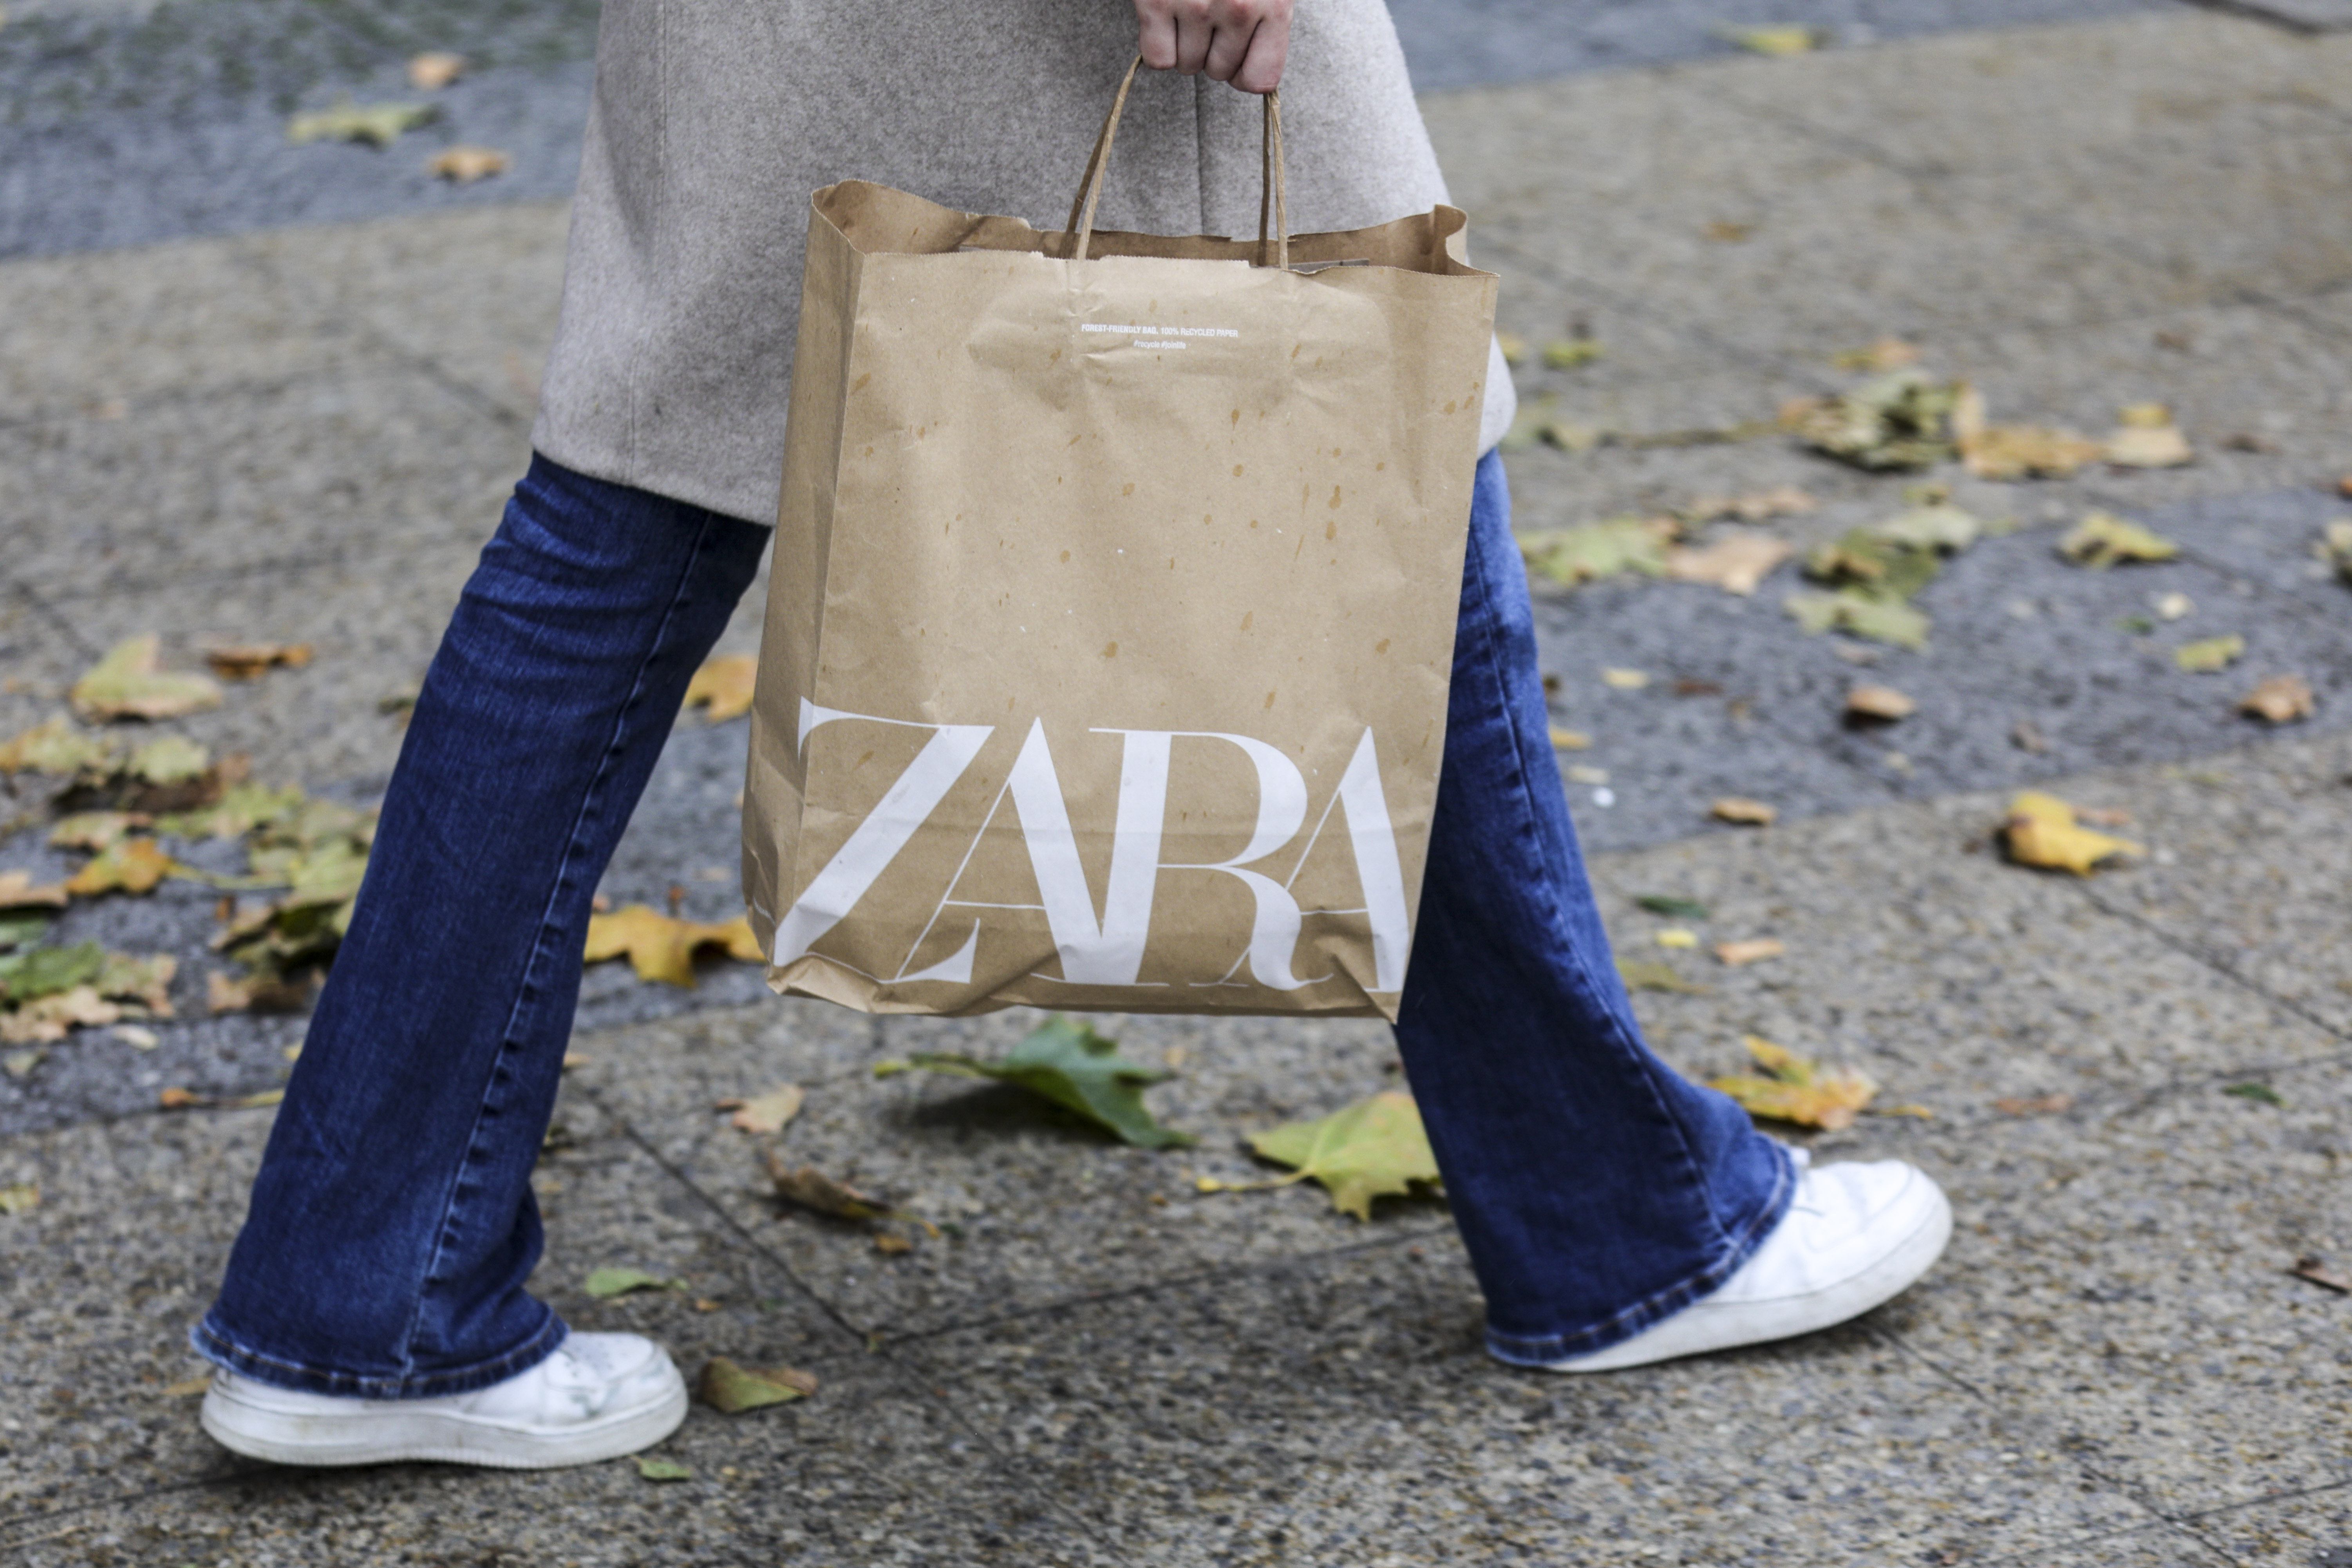 Maior Zara de Portugal abre já esta semana